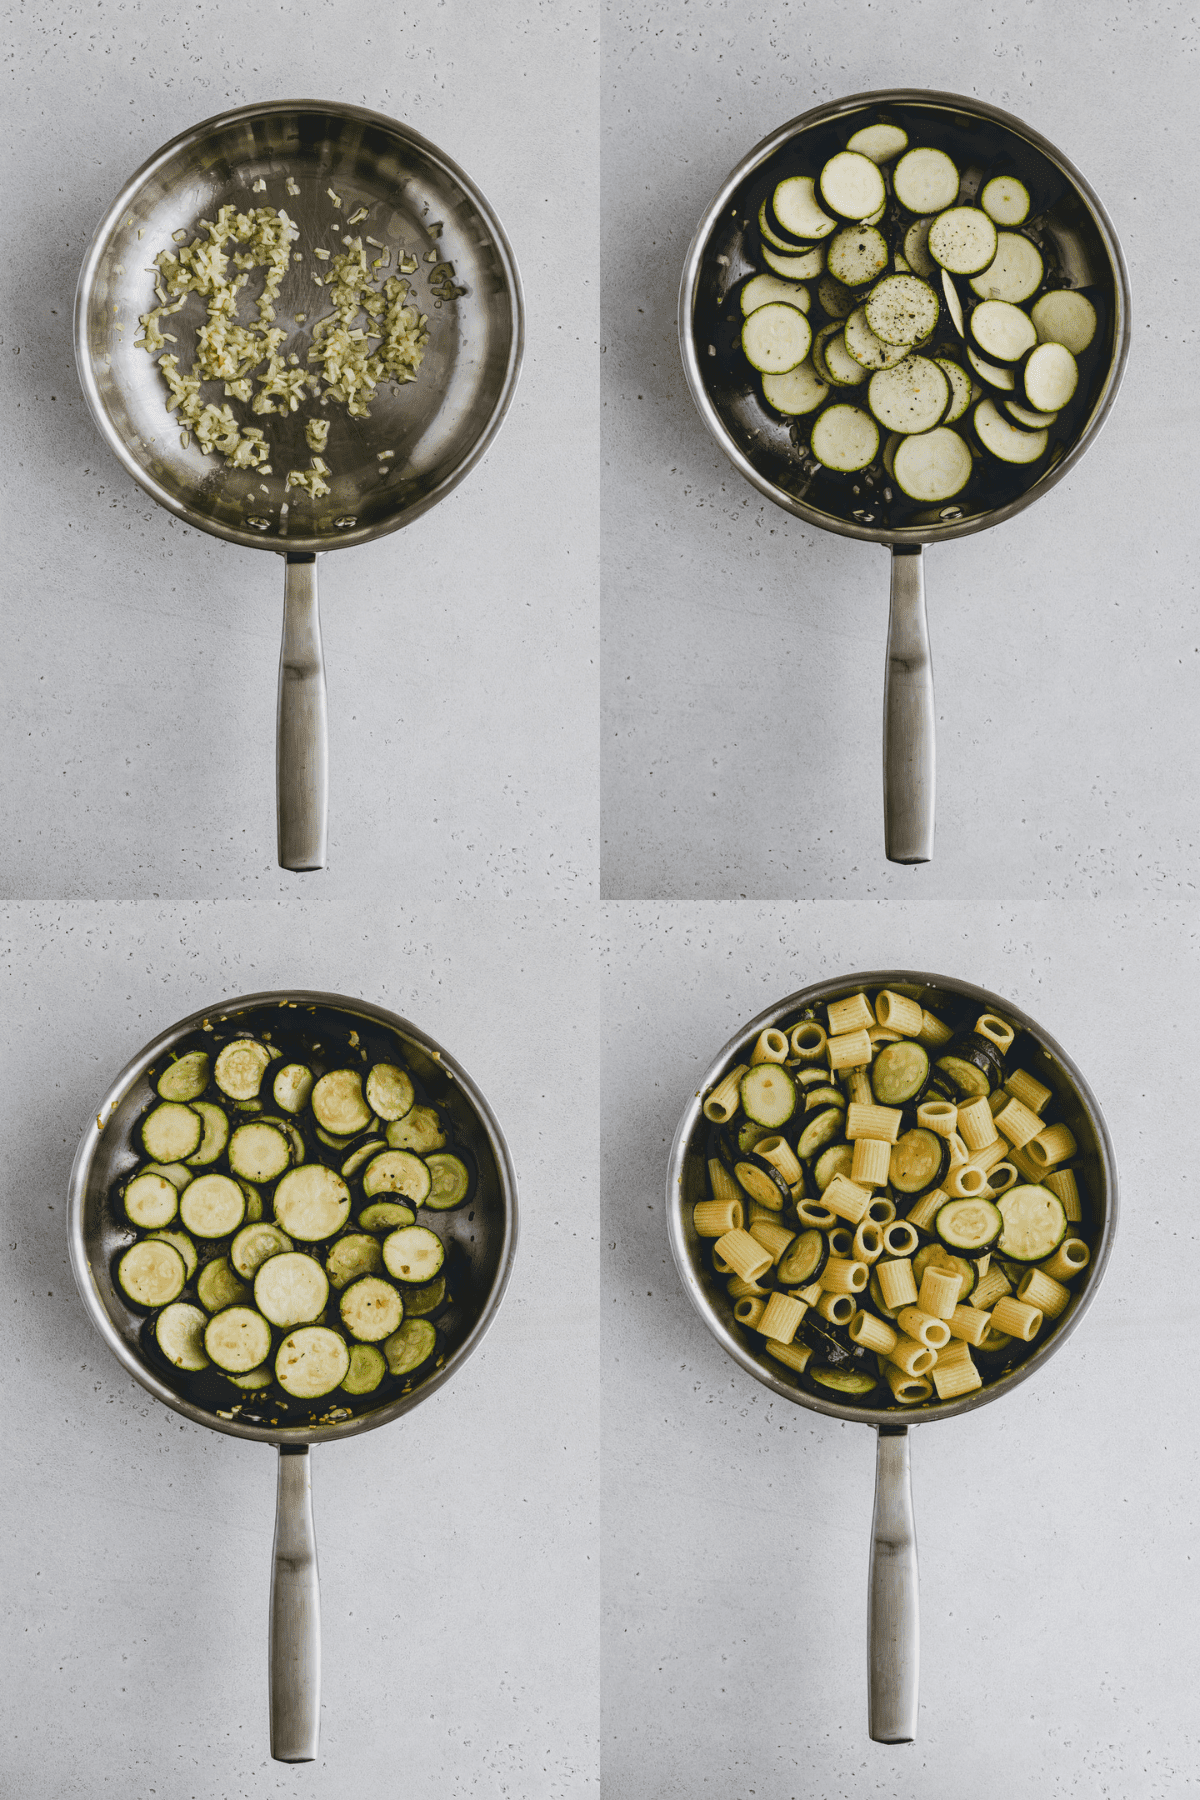 Zucchini Pasta Recipe Step 1-4